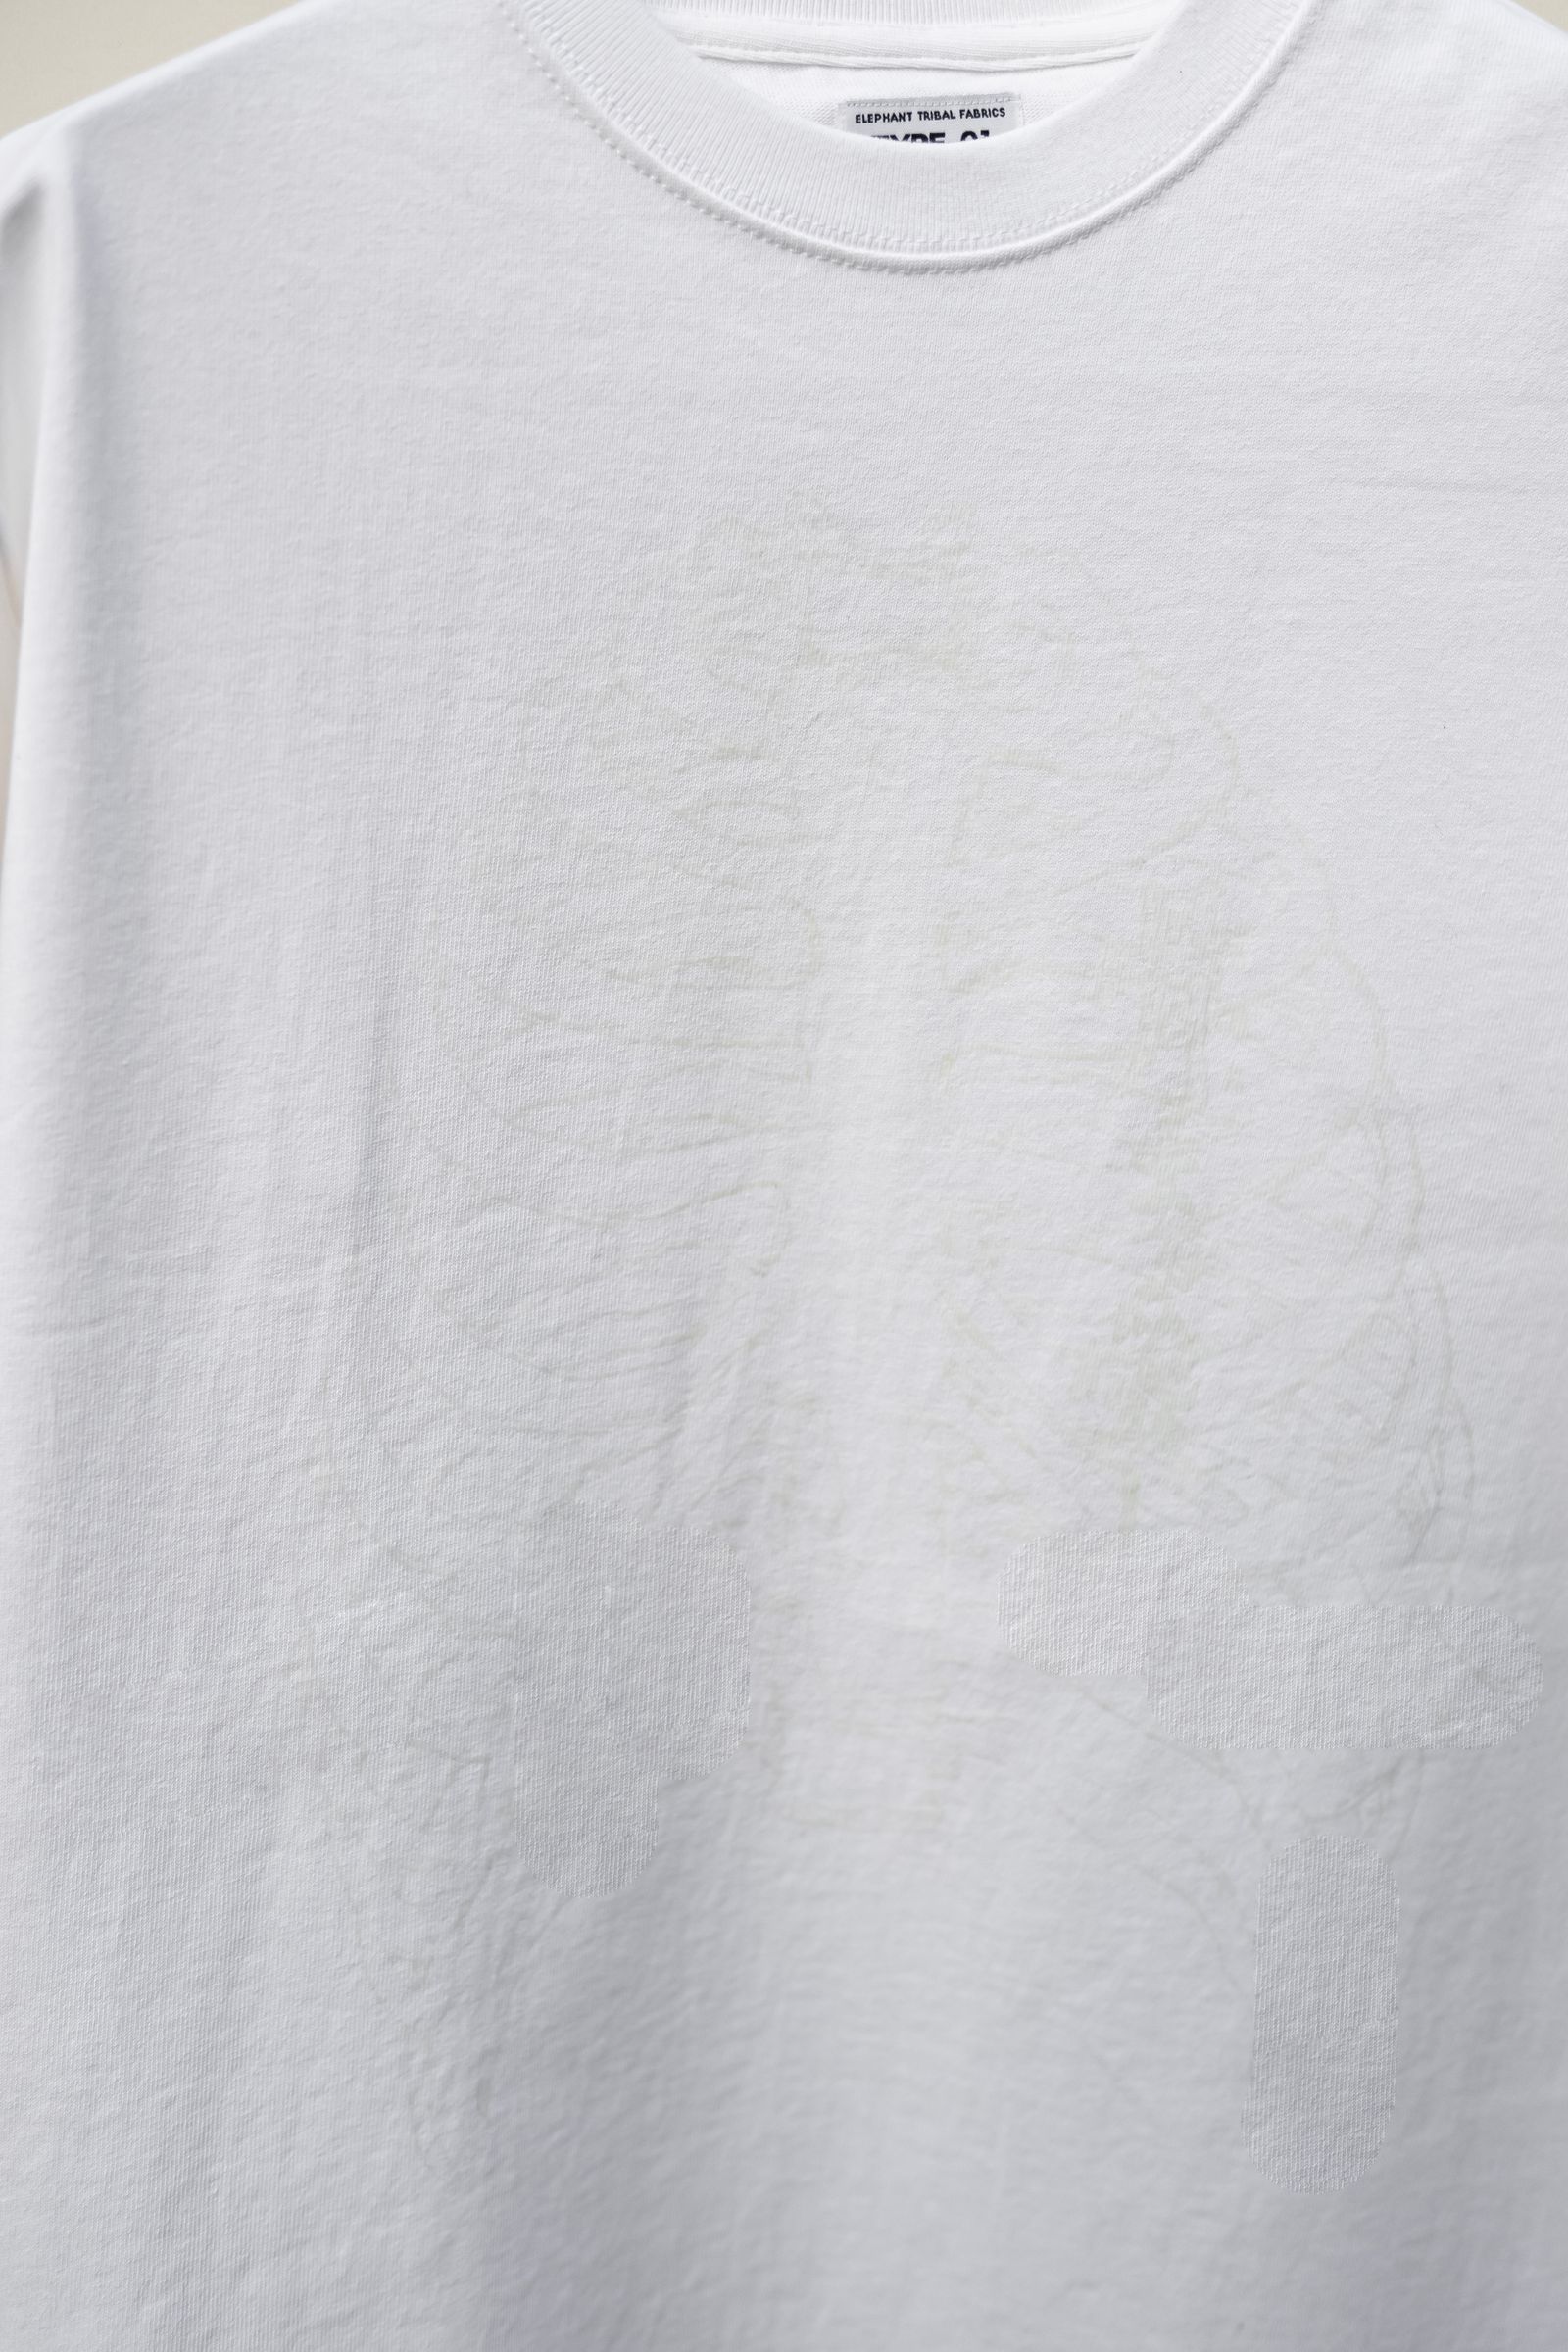 elephant TRIBAL fabrics - 1966s T-SH / WHITE | Retikle Online Store